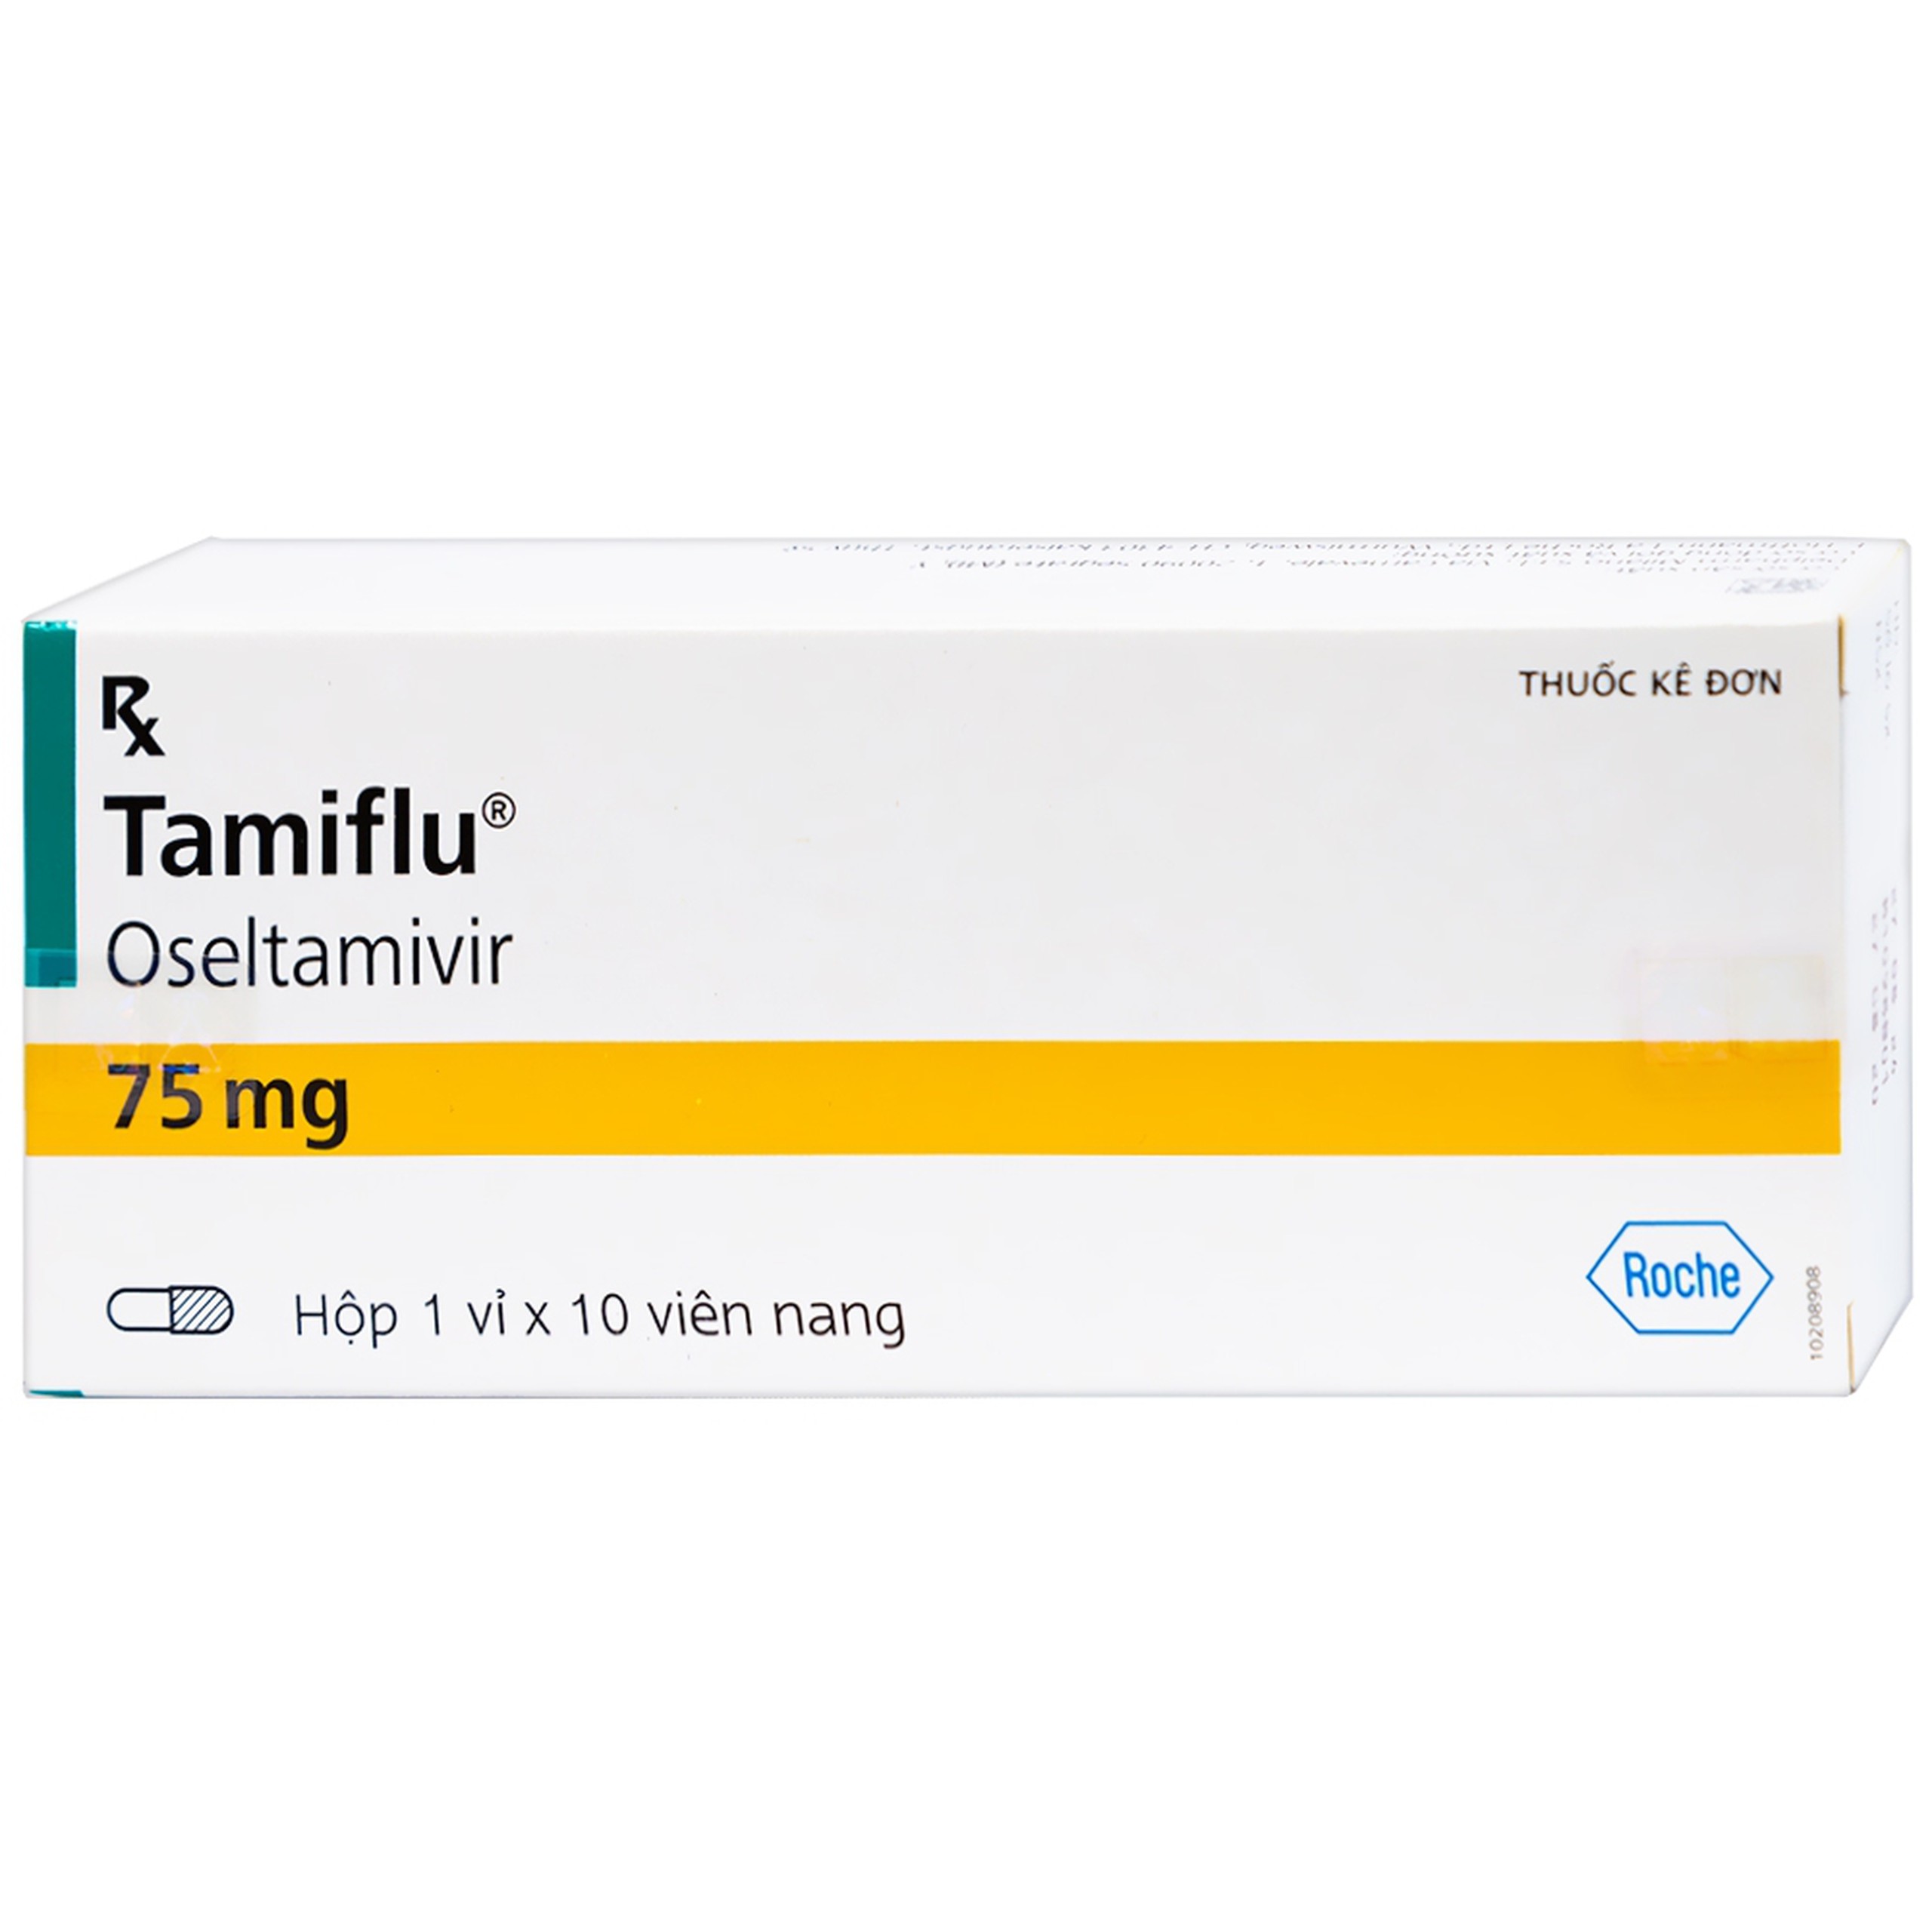 Thuốc Tamiflu Roche điều trị bệnh cúm (1 vỉ x 10 viên)